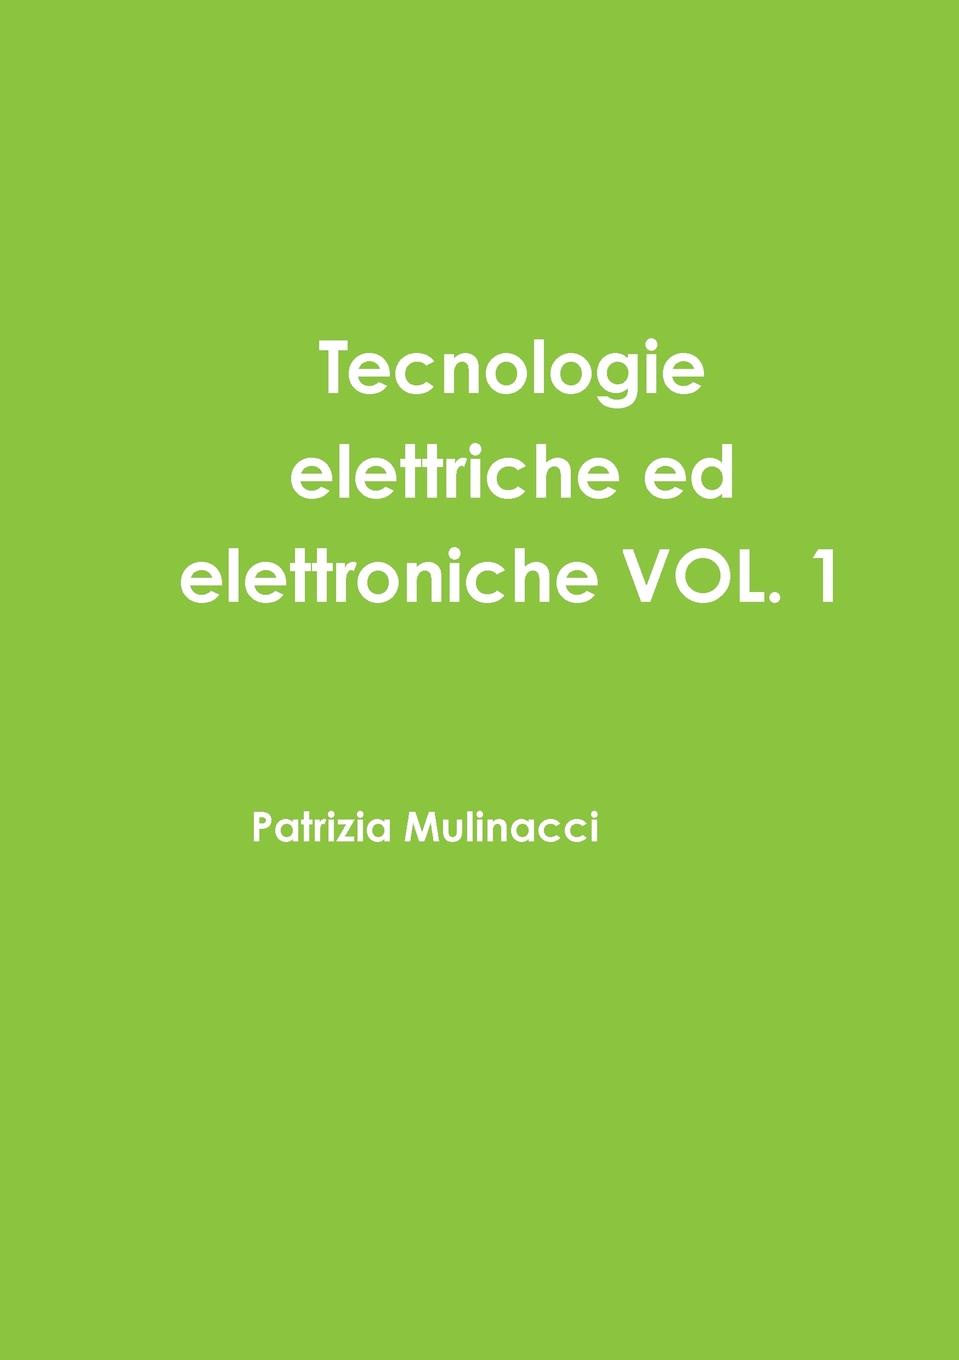 Tecnologie elettriche ed elettroniche VOL. 1